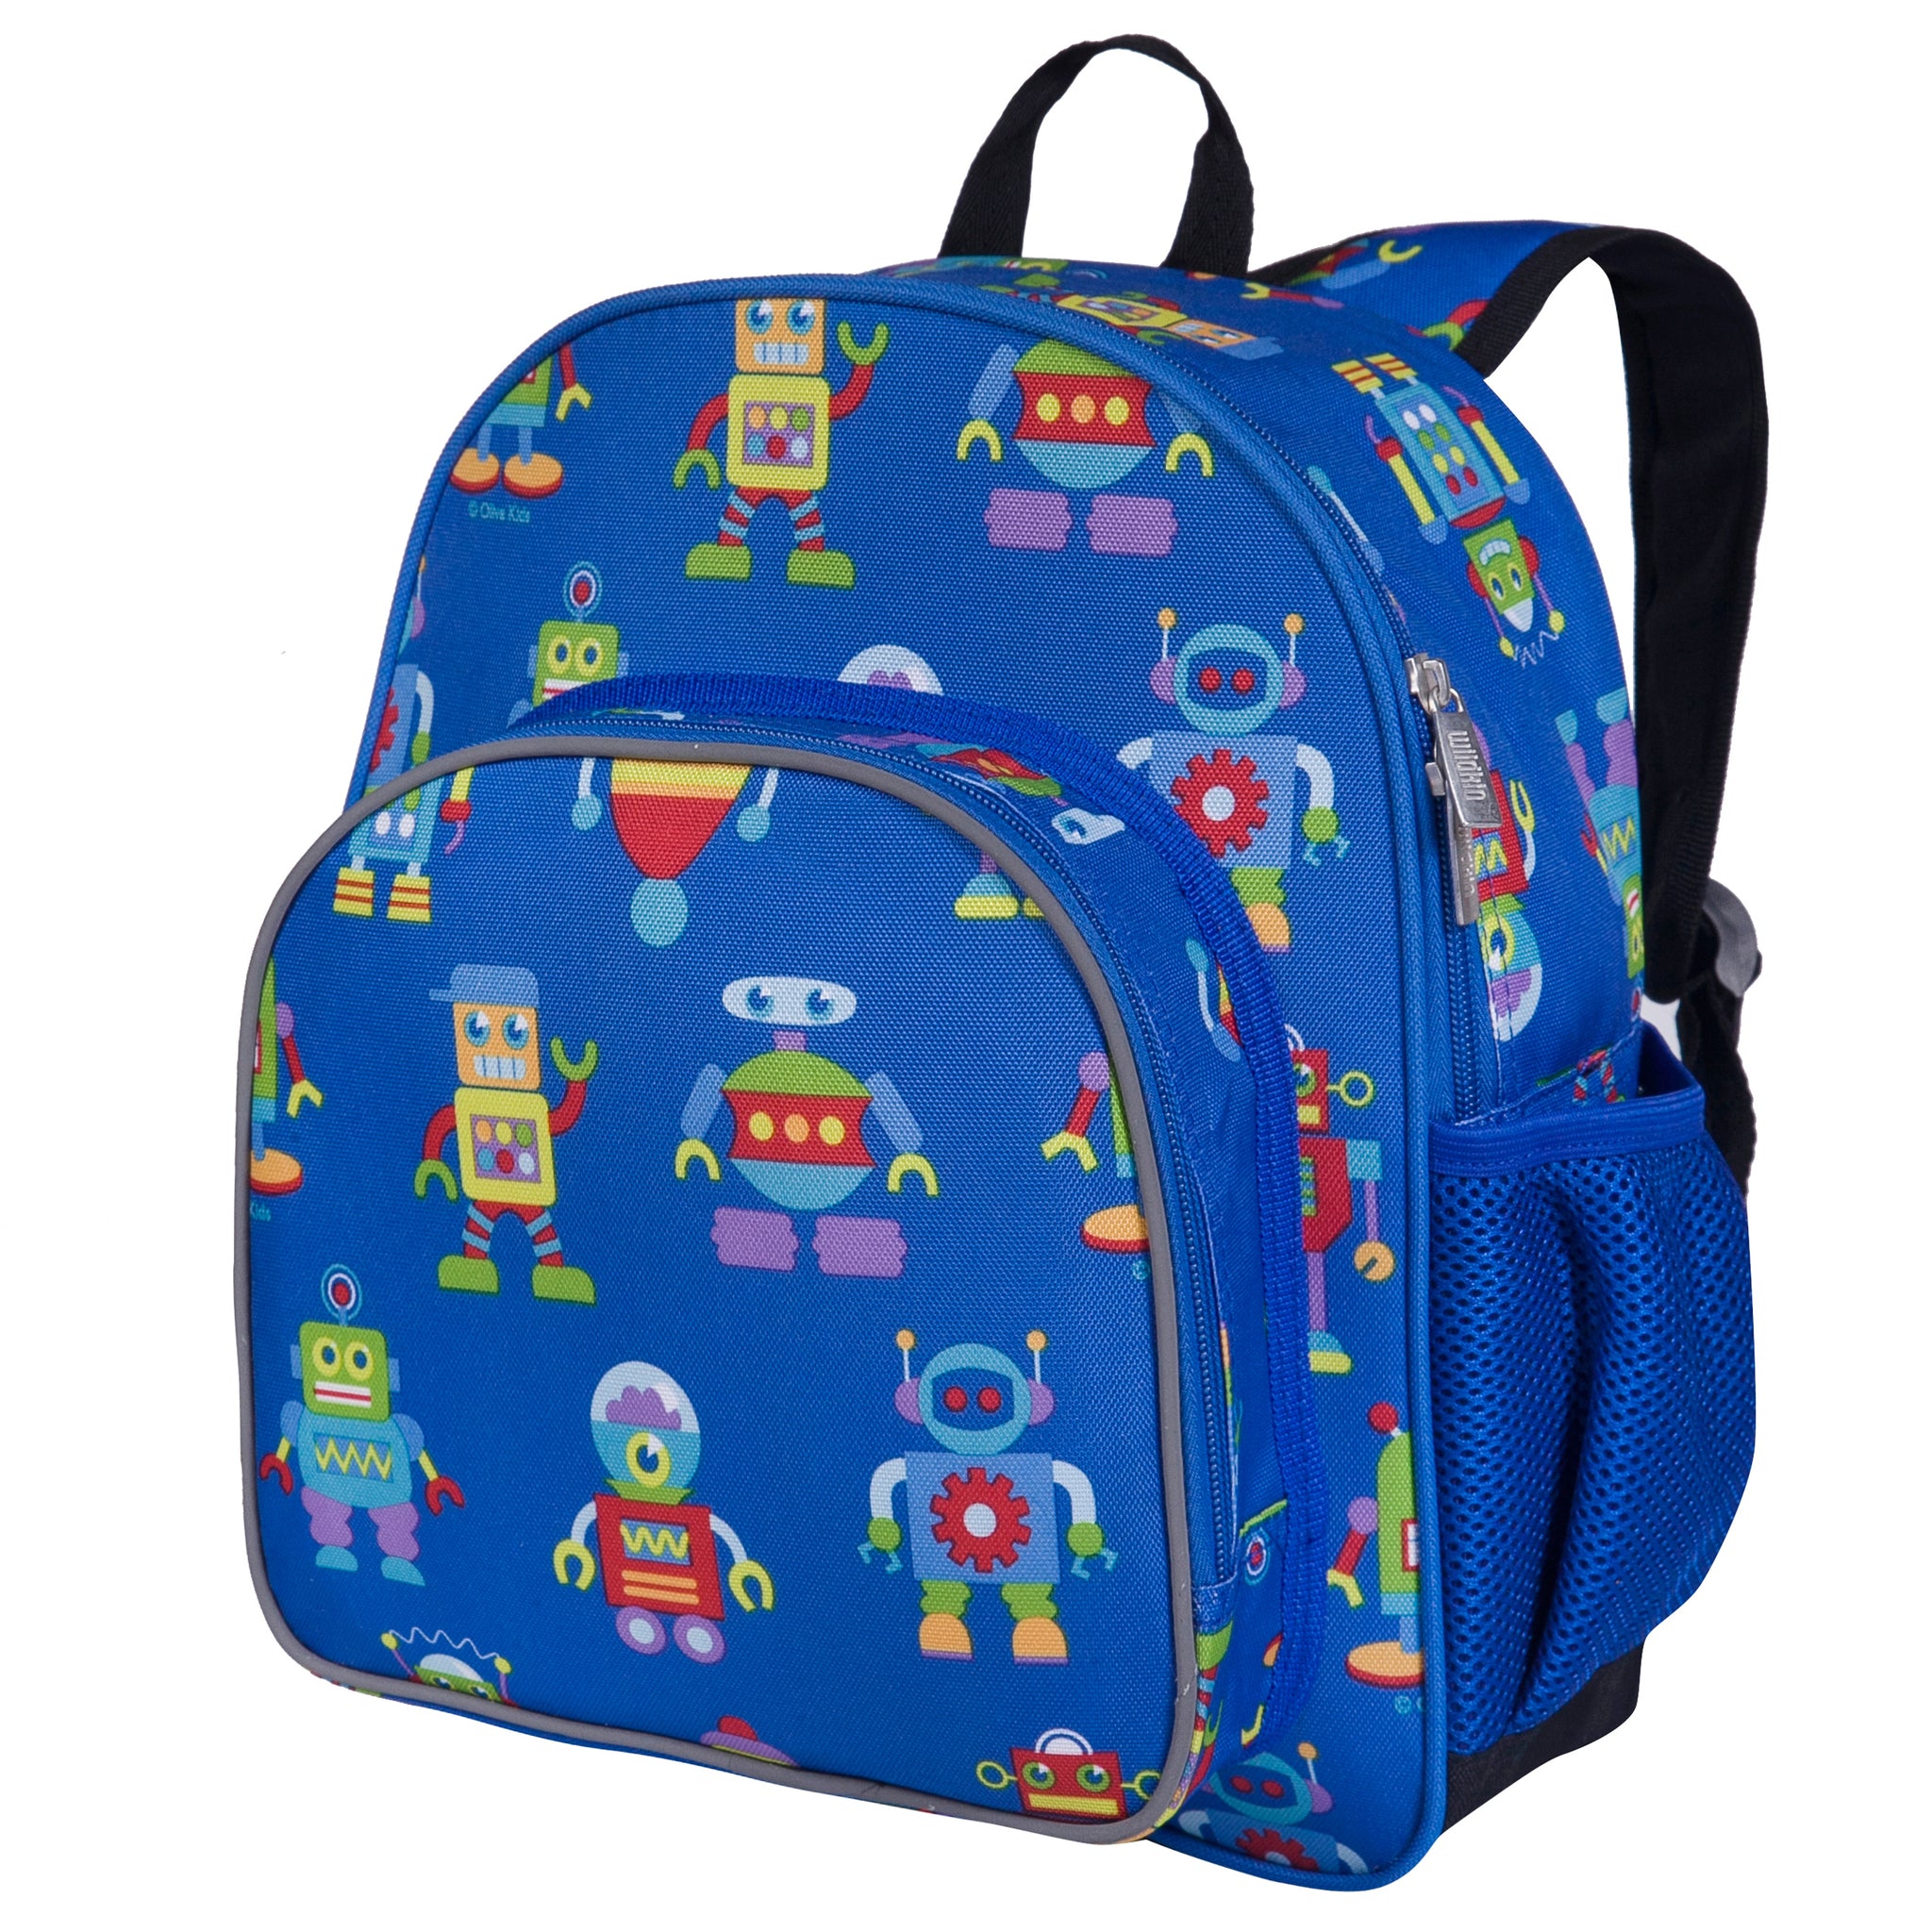 Wildkin 12 Inch Kids Backpack